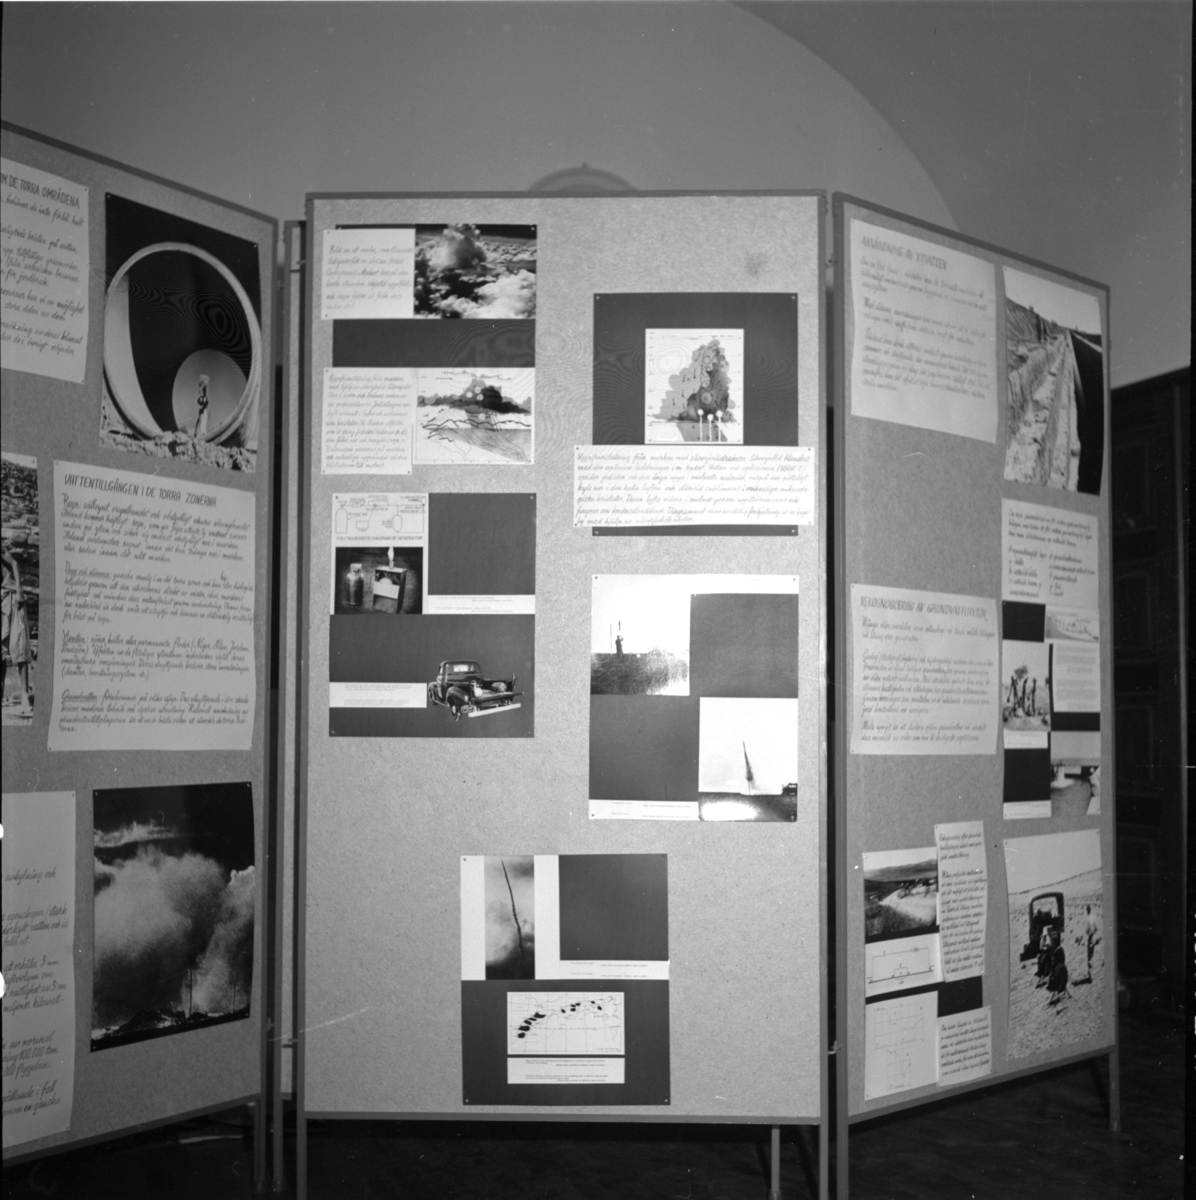 'Uställningen ''Människan och öknen - en utställning presenterad av UNESCO''. ::  :: Sektion av utställningsskärm, troligen inne i biblioteket, under arbetet med att sätta ihop utställningen ''Människan och öknen''. ::  :: Ingår i serie med fotonr. 6984:1-18.'